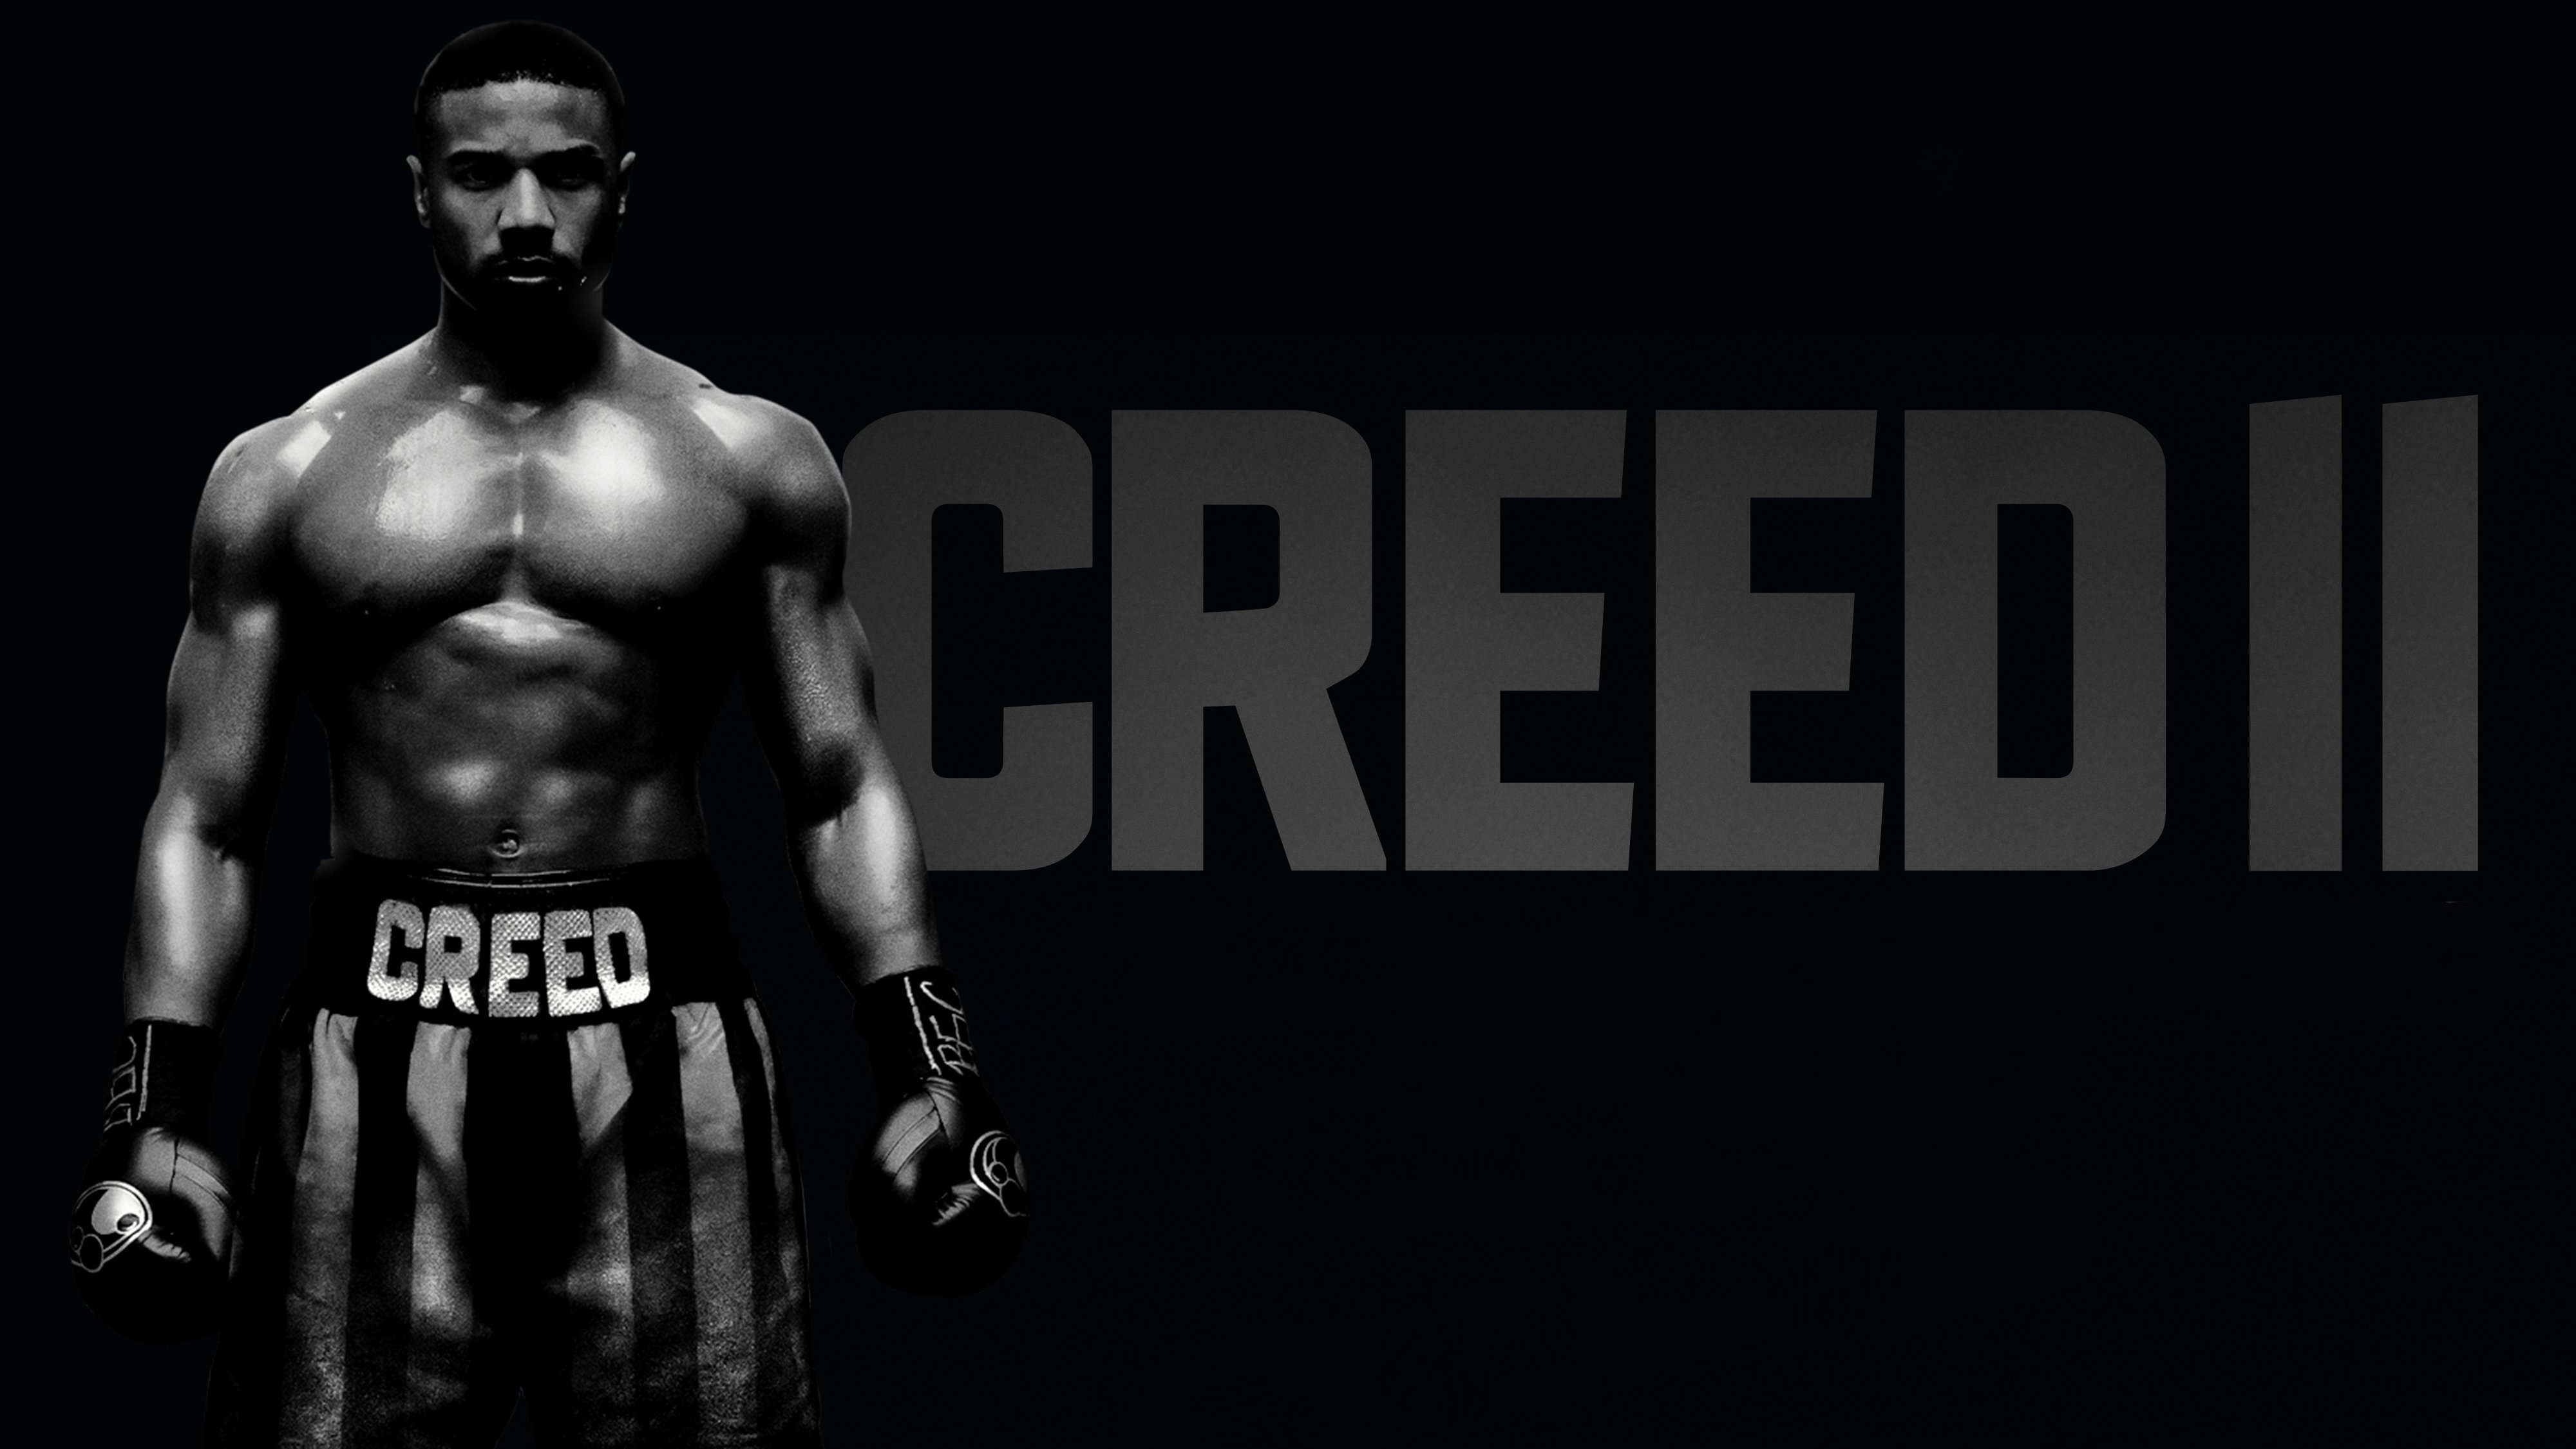 Creed II 2018 4K